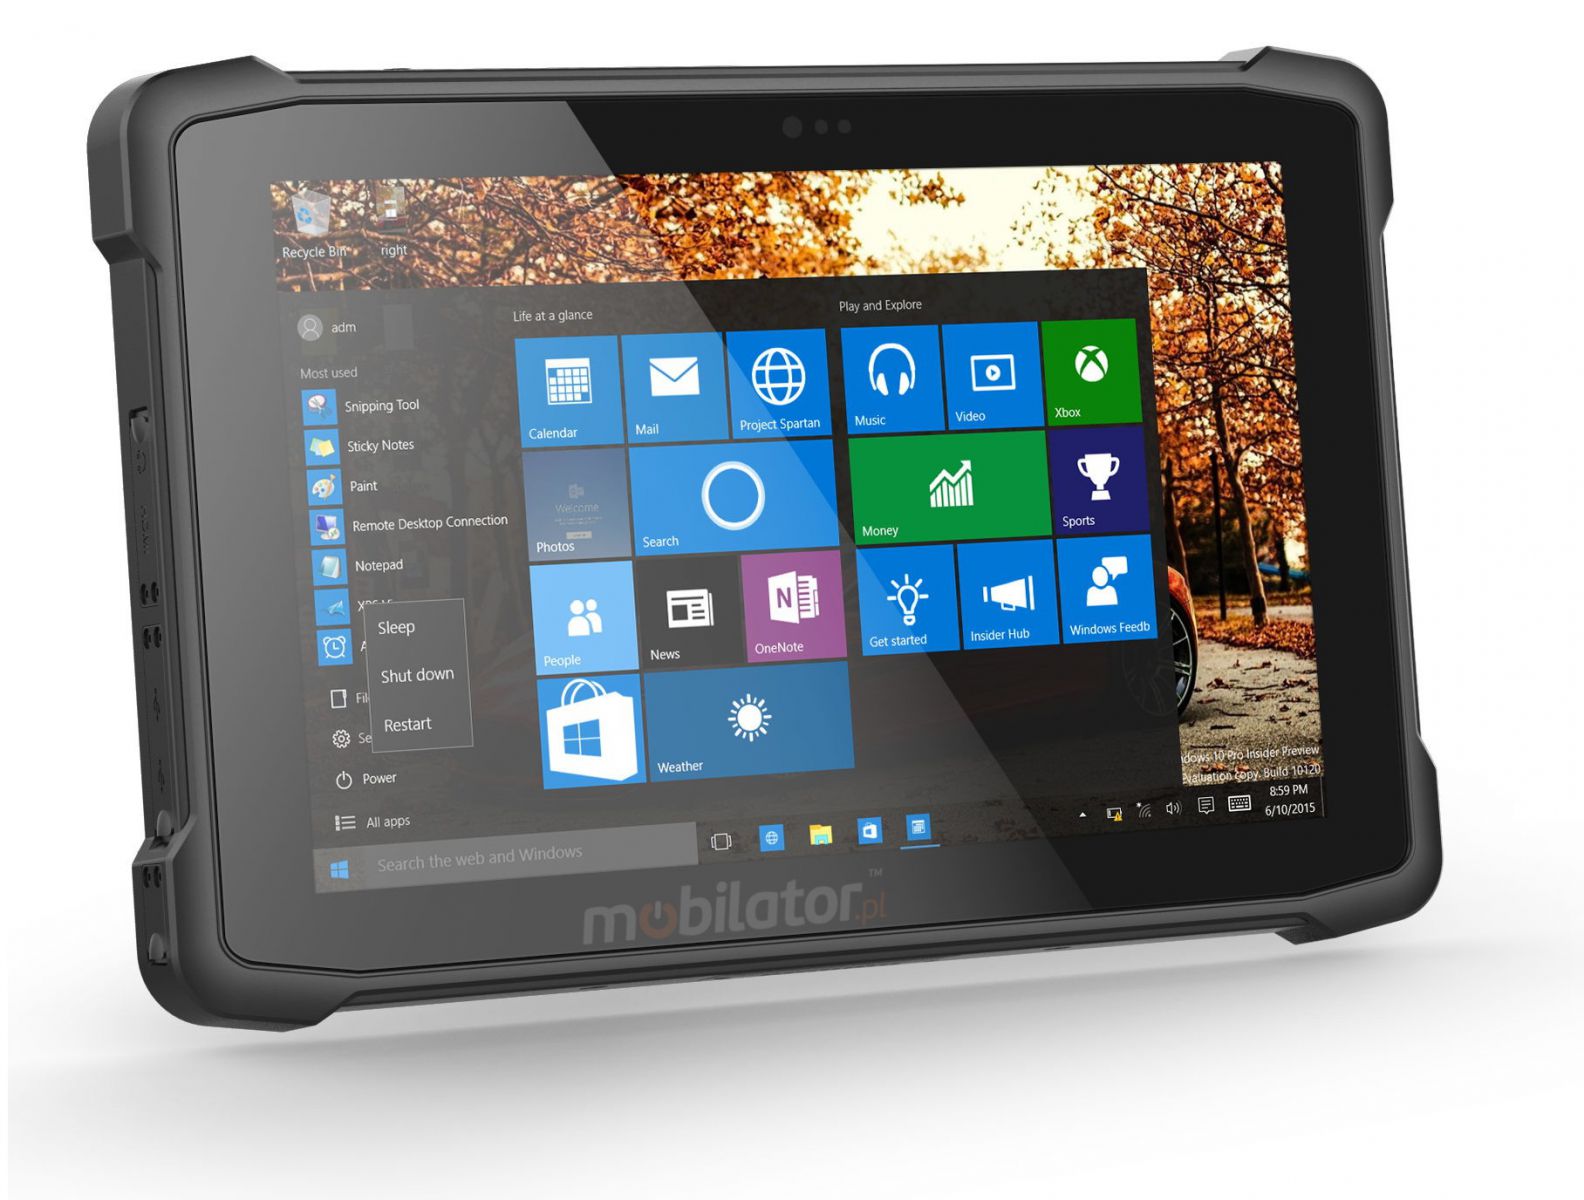 Przemysowy dziesiciocalowy tablet z czytnikiem kodw 1D MOTO, Bluetooth 4.2, 4GB RAM, 64GB ROM, NFC, 4G i Windows 10 IoT - Emdoor I11H v.7